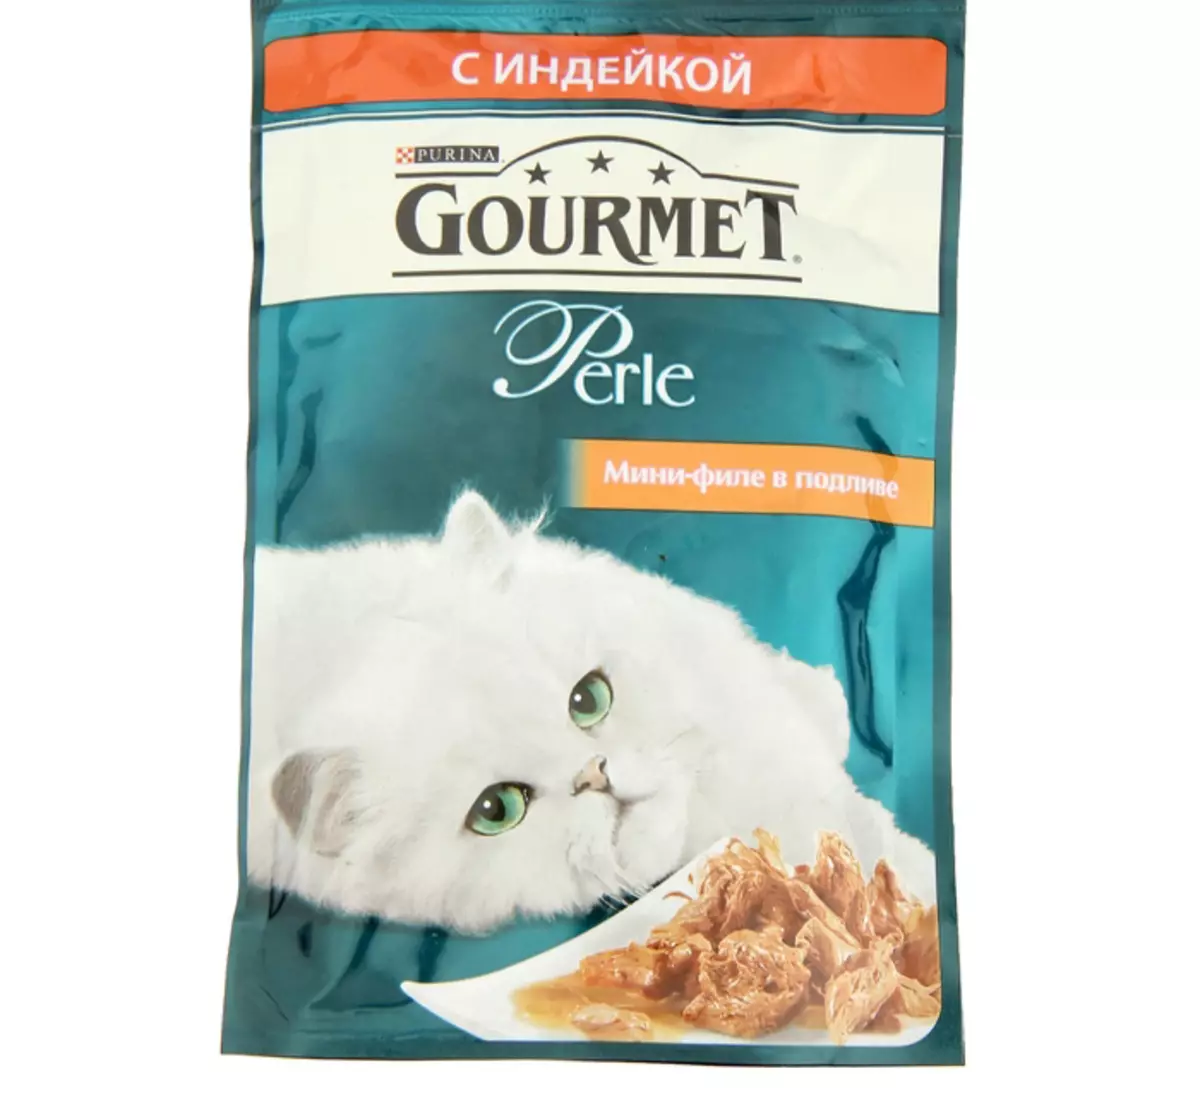 Gourmet: gat de gat i gatets de purina, patis humits i altres aliments enllaunats felins, la seva composició, comentaris 22711_32